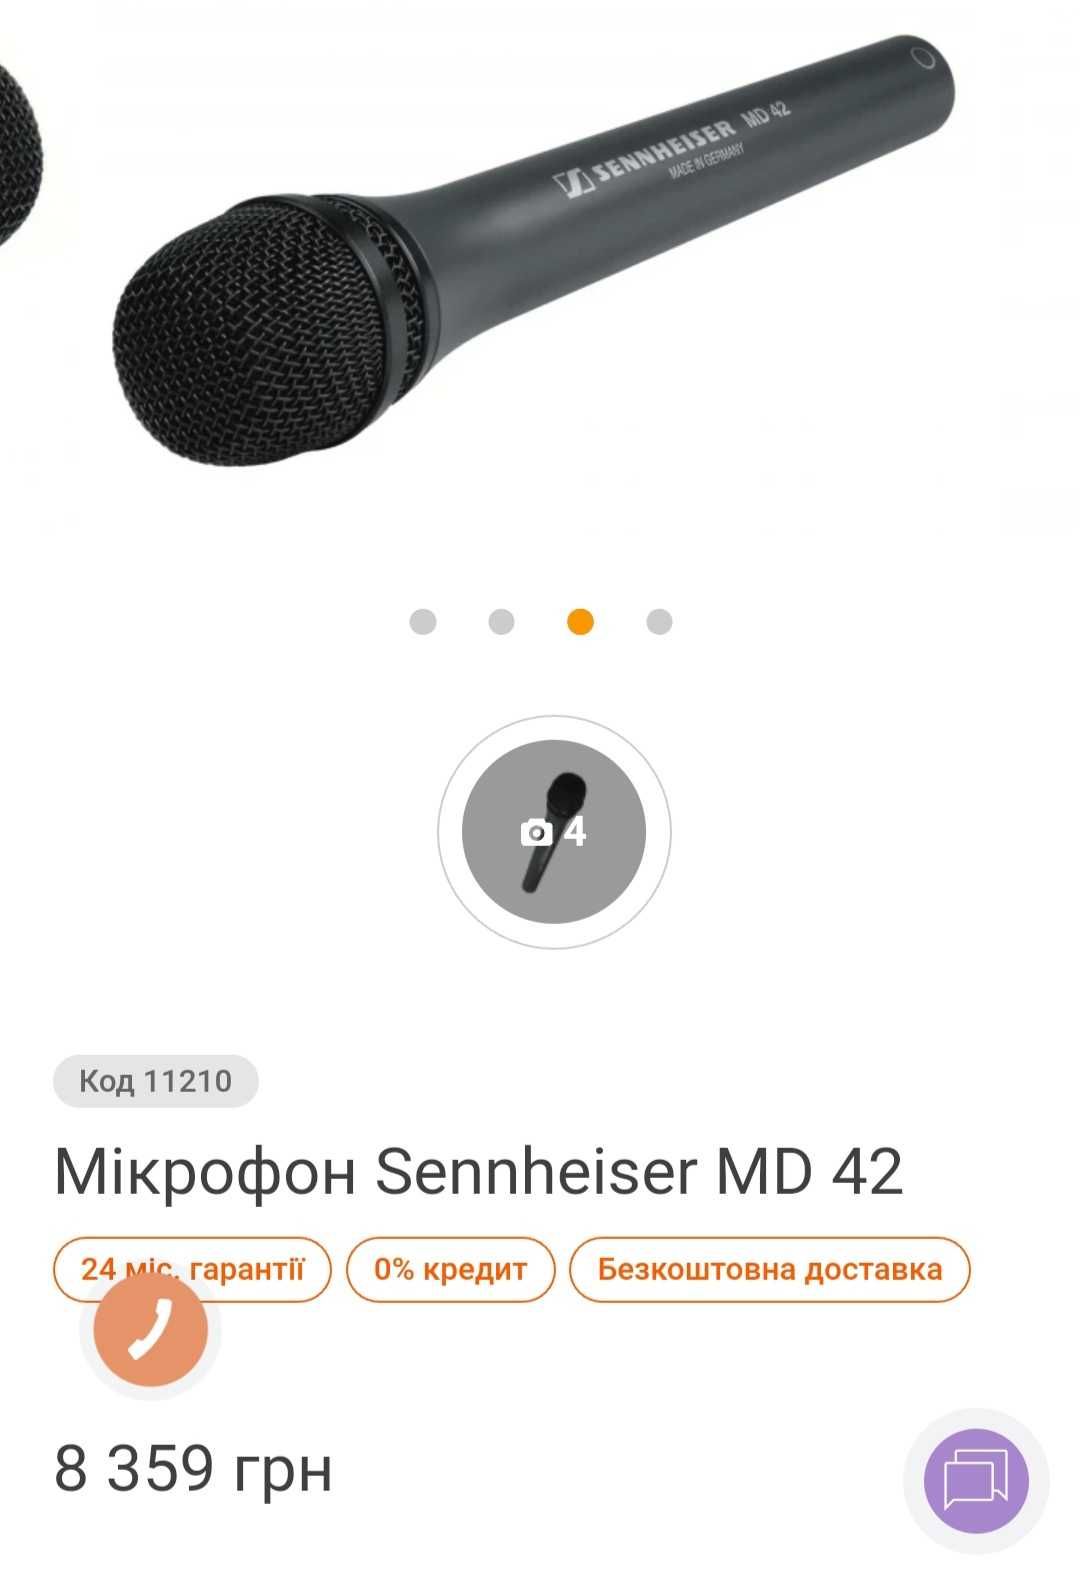 Мікрофон репортерський Sennheiser MD42